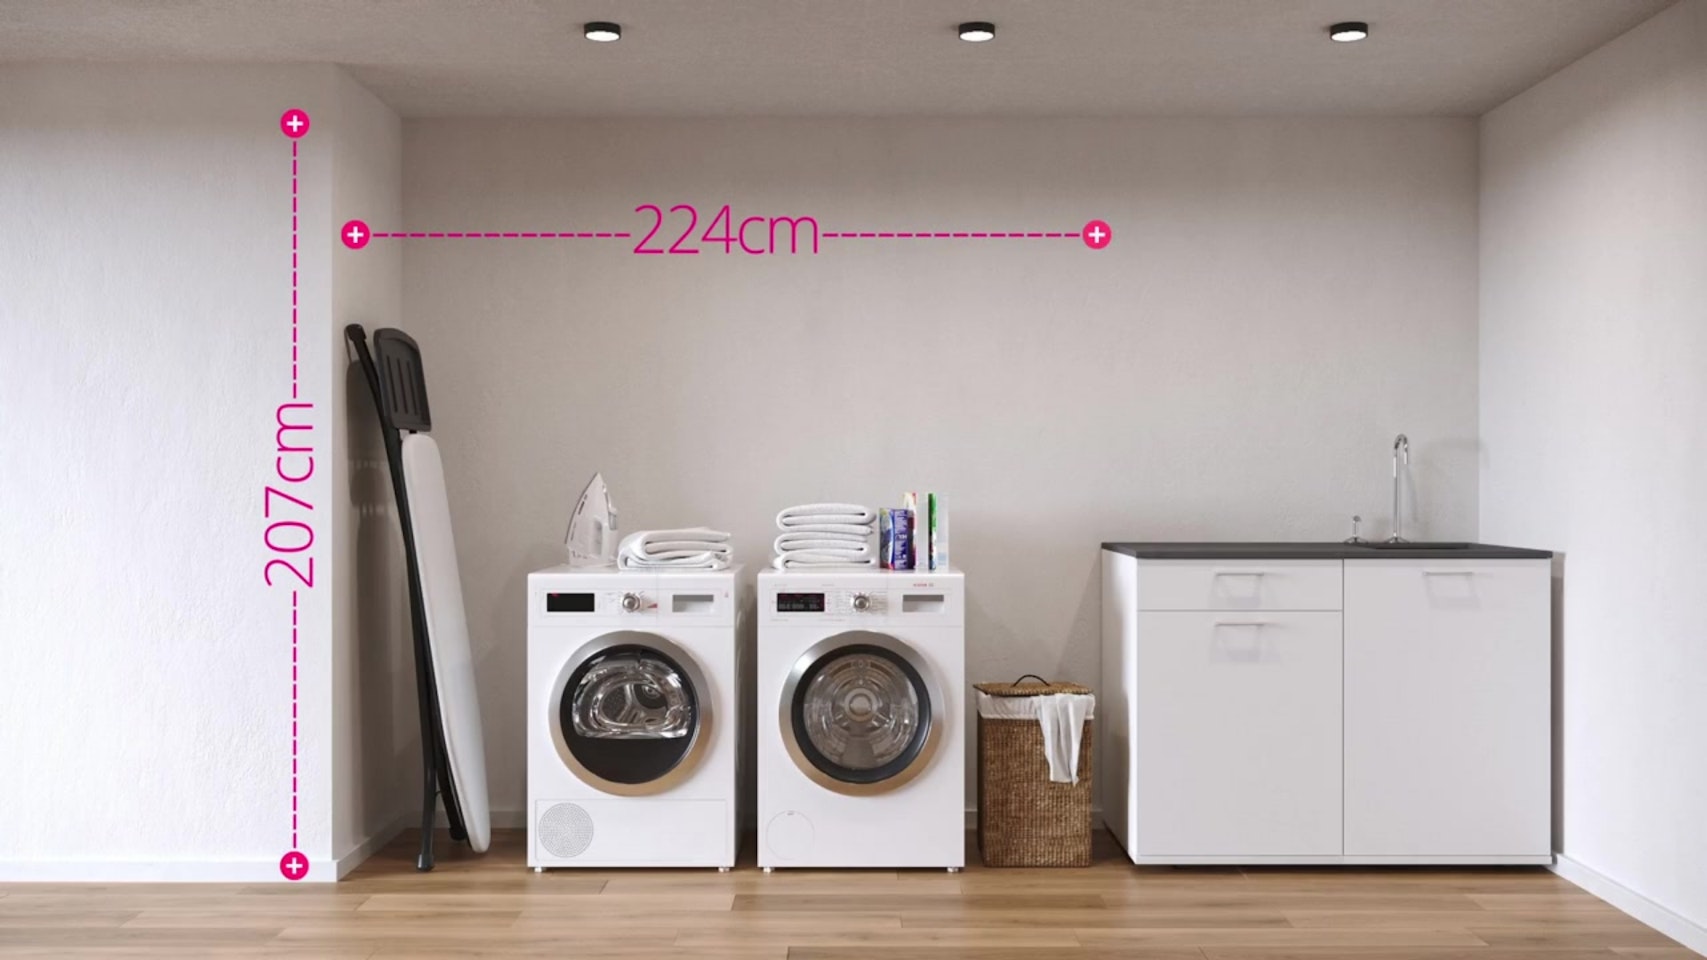 Den Hauswirtschaftsraums auszumessen ist wichtig, um den Waschmaschinenschrank dem Raum anzupassen.